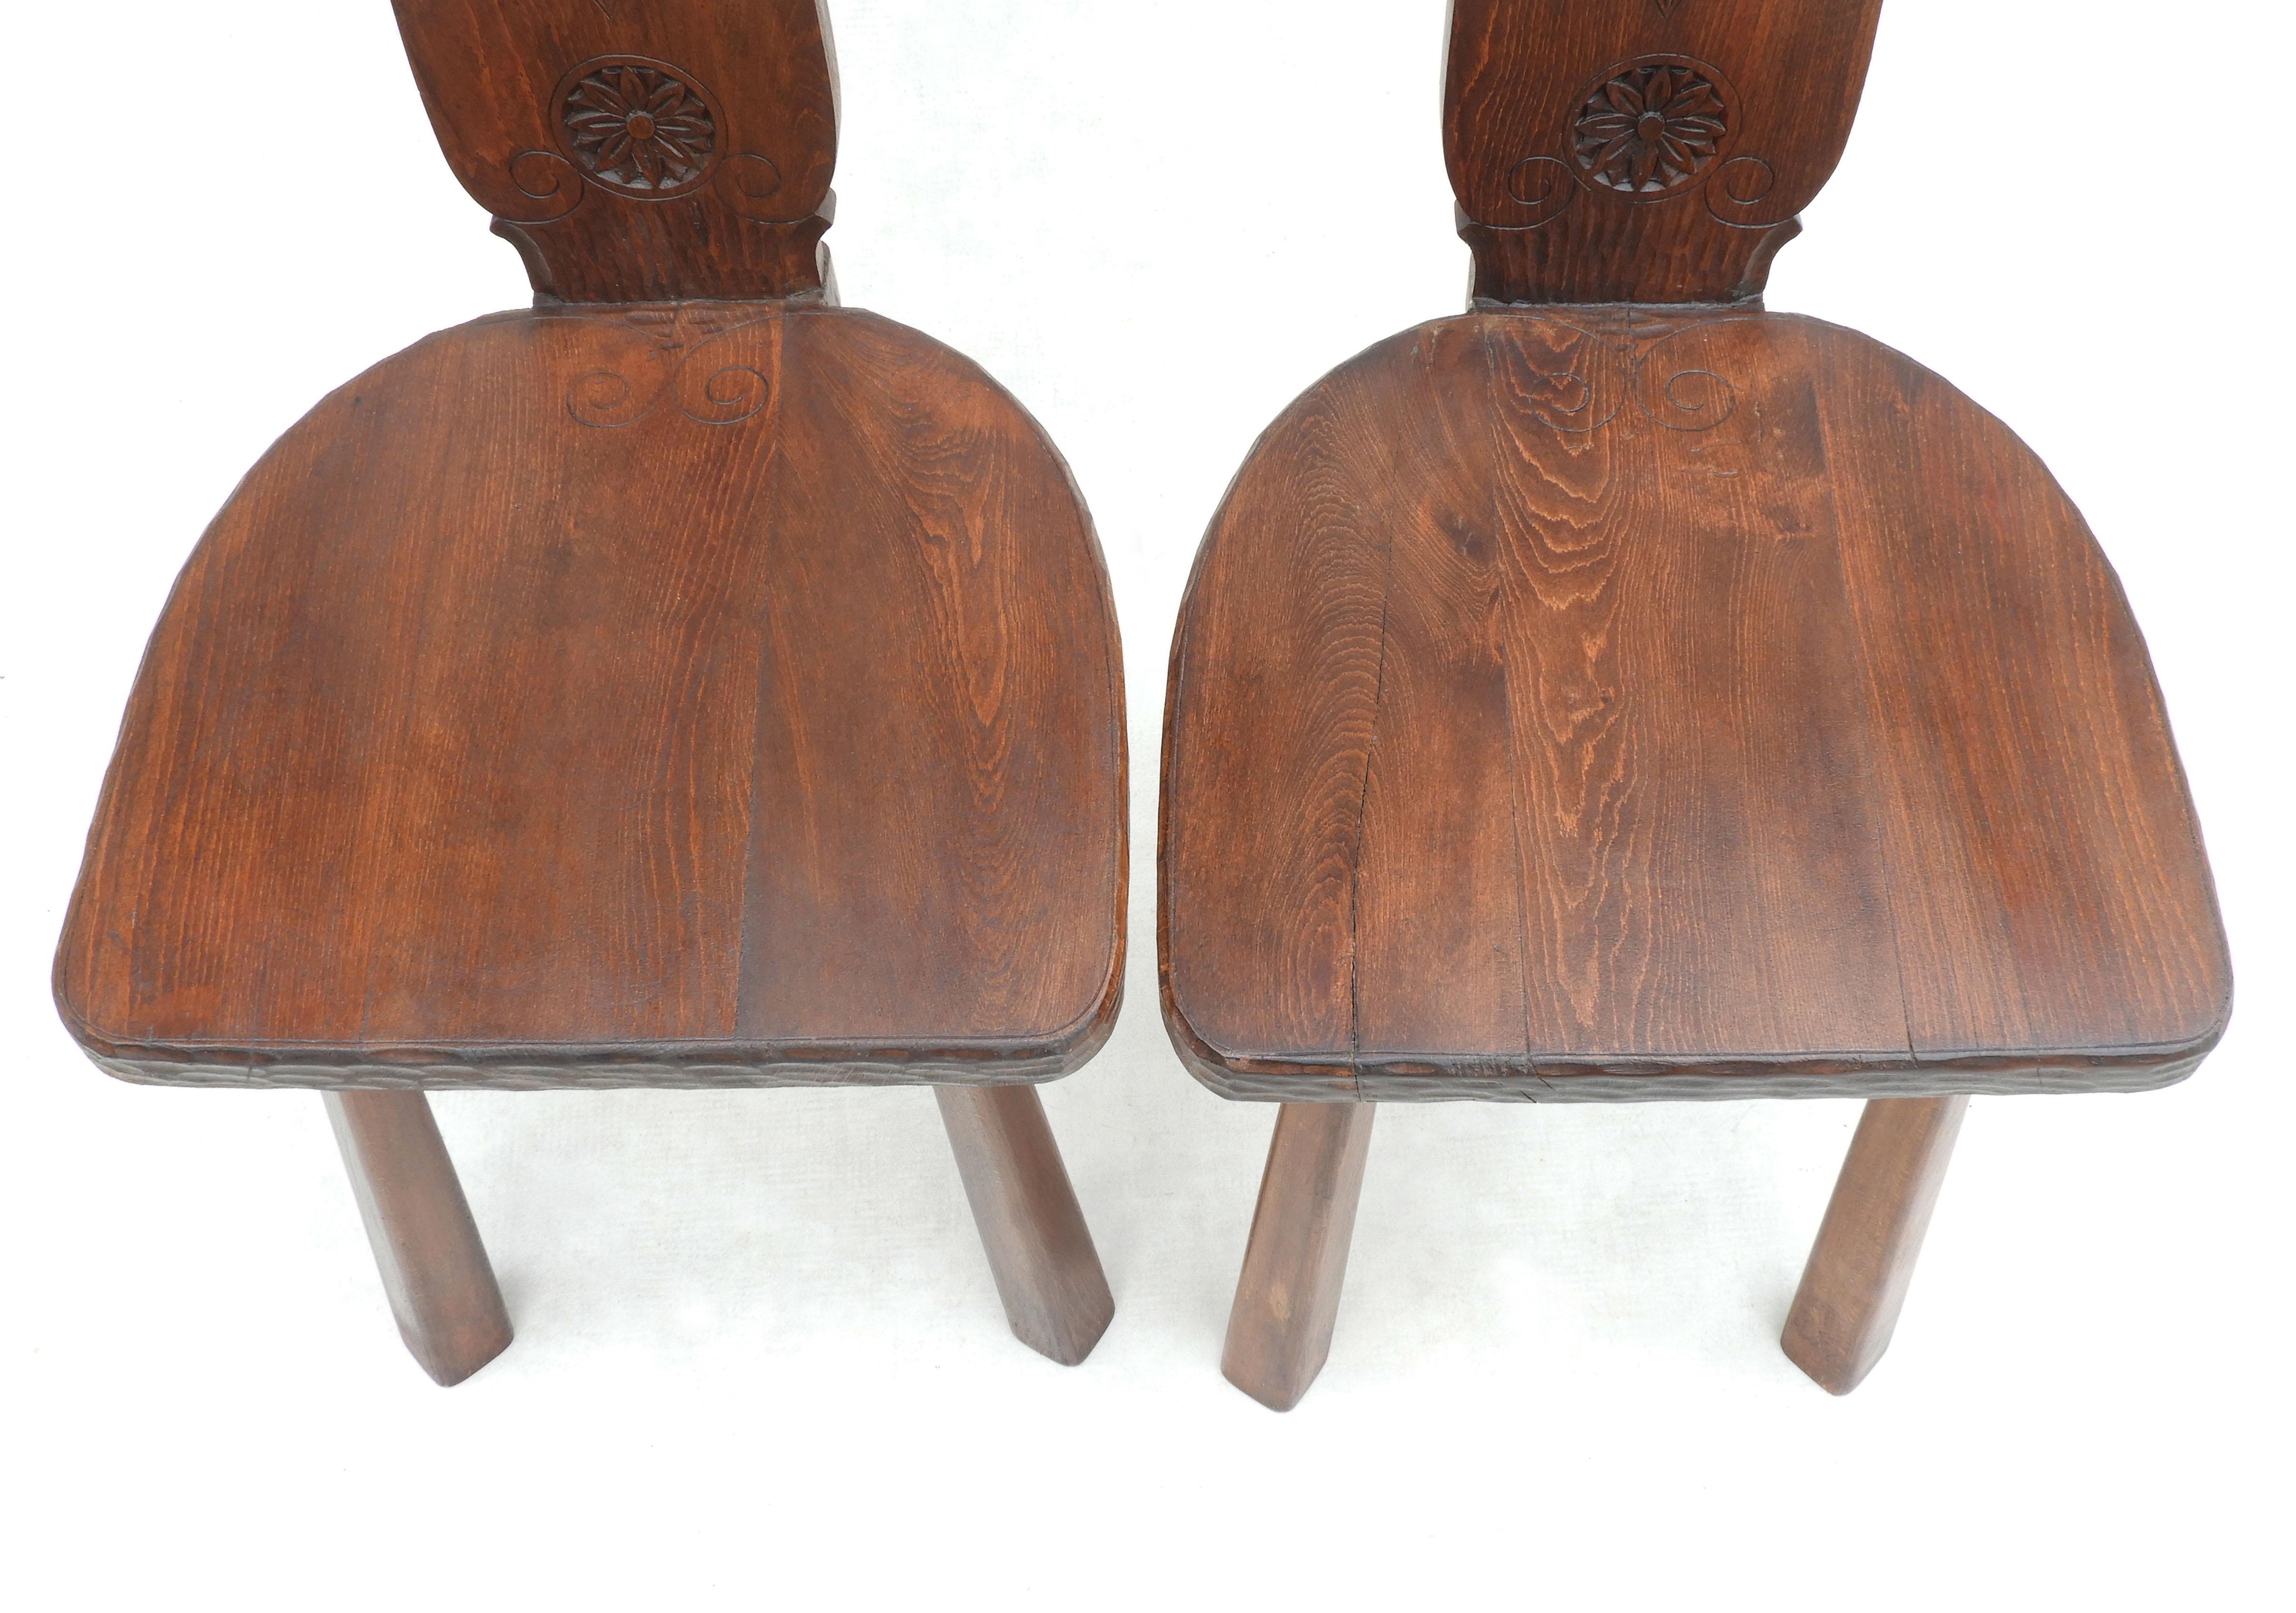 Pair of Basque Tripod Chairs 1950s European Folk Art For Sale 4